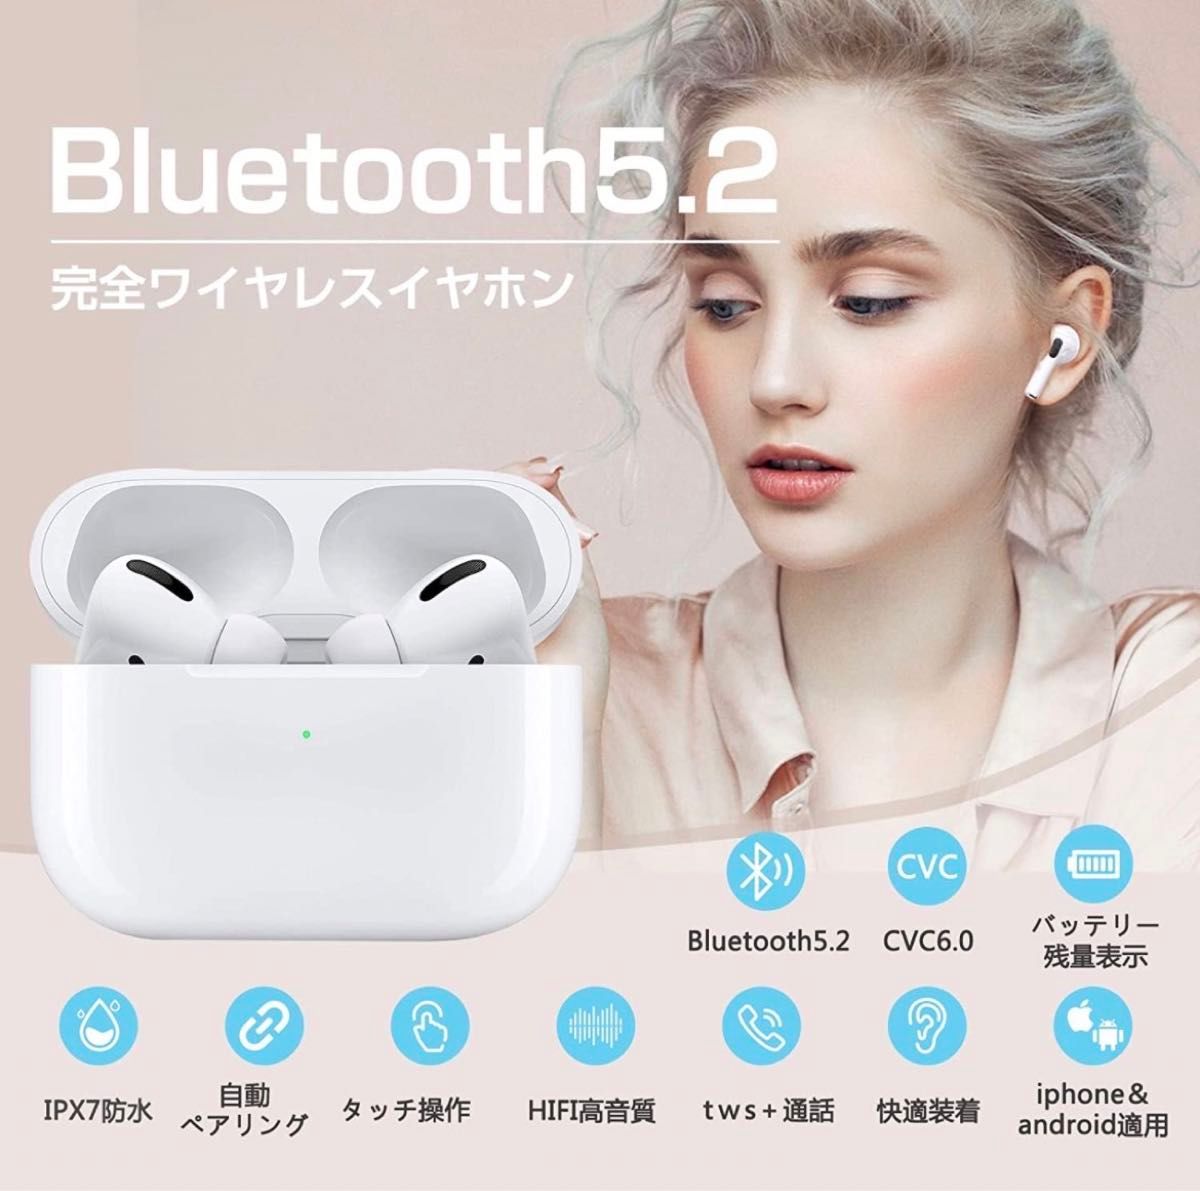 Airpods pro 互換品 ワイヤレスイヤホン イヤホン Bluetooth 高音質 HiFi 同モデル 最新